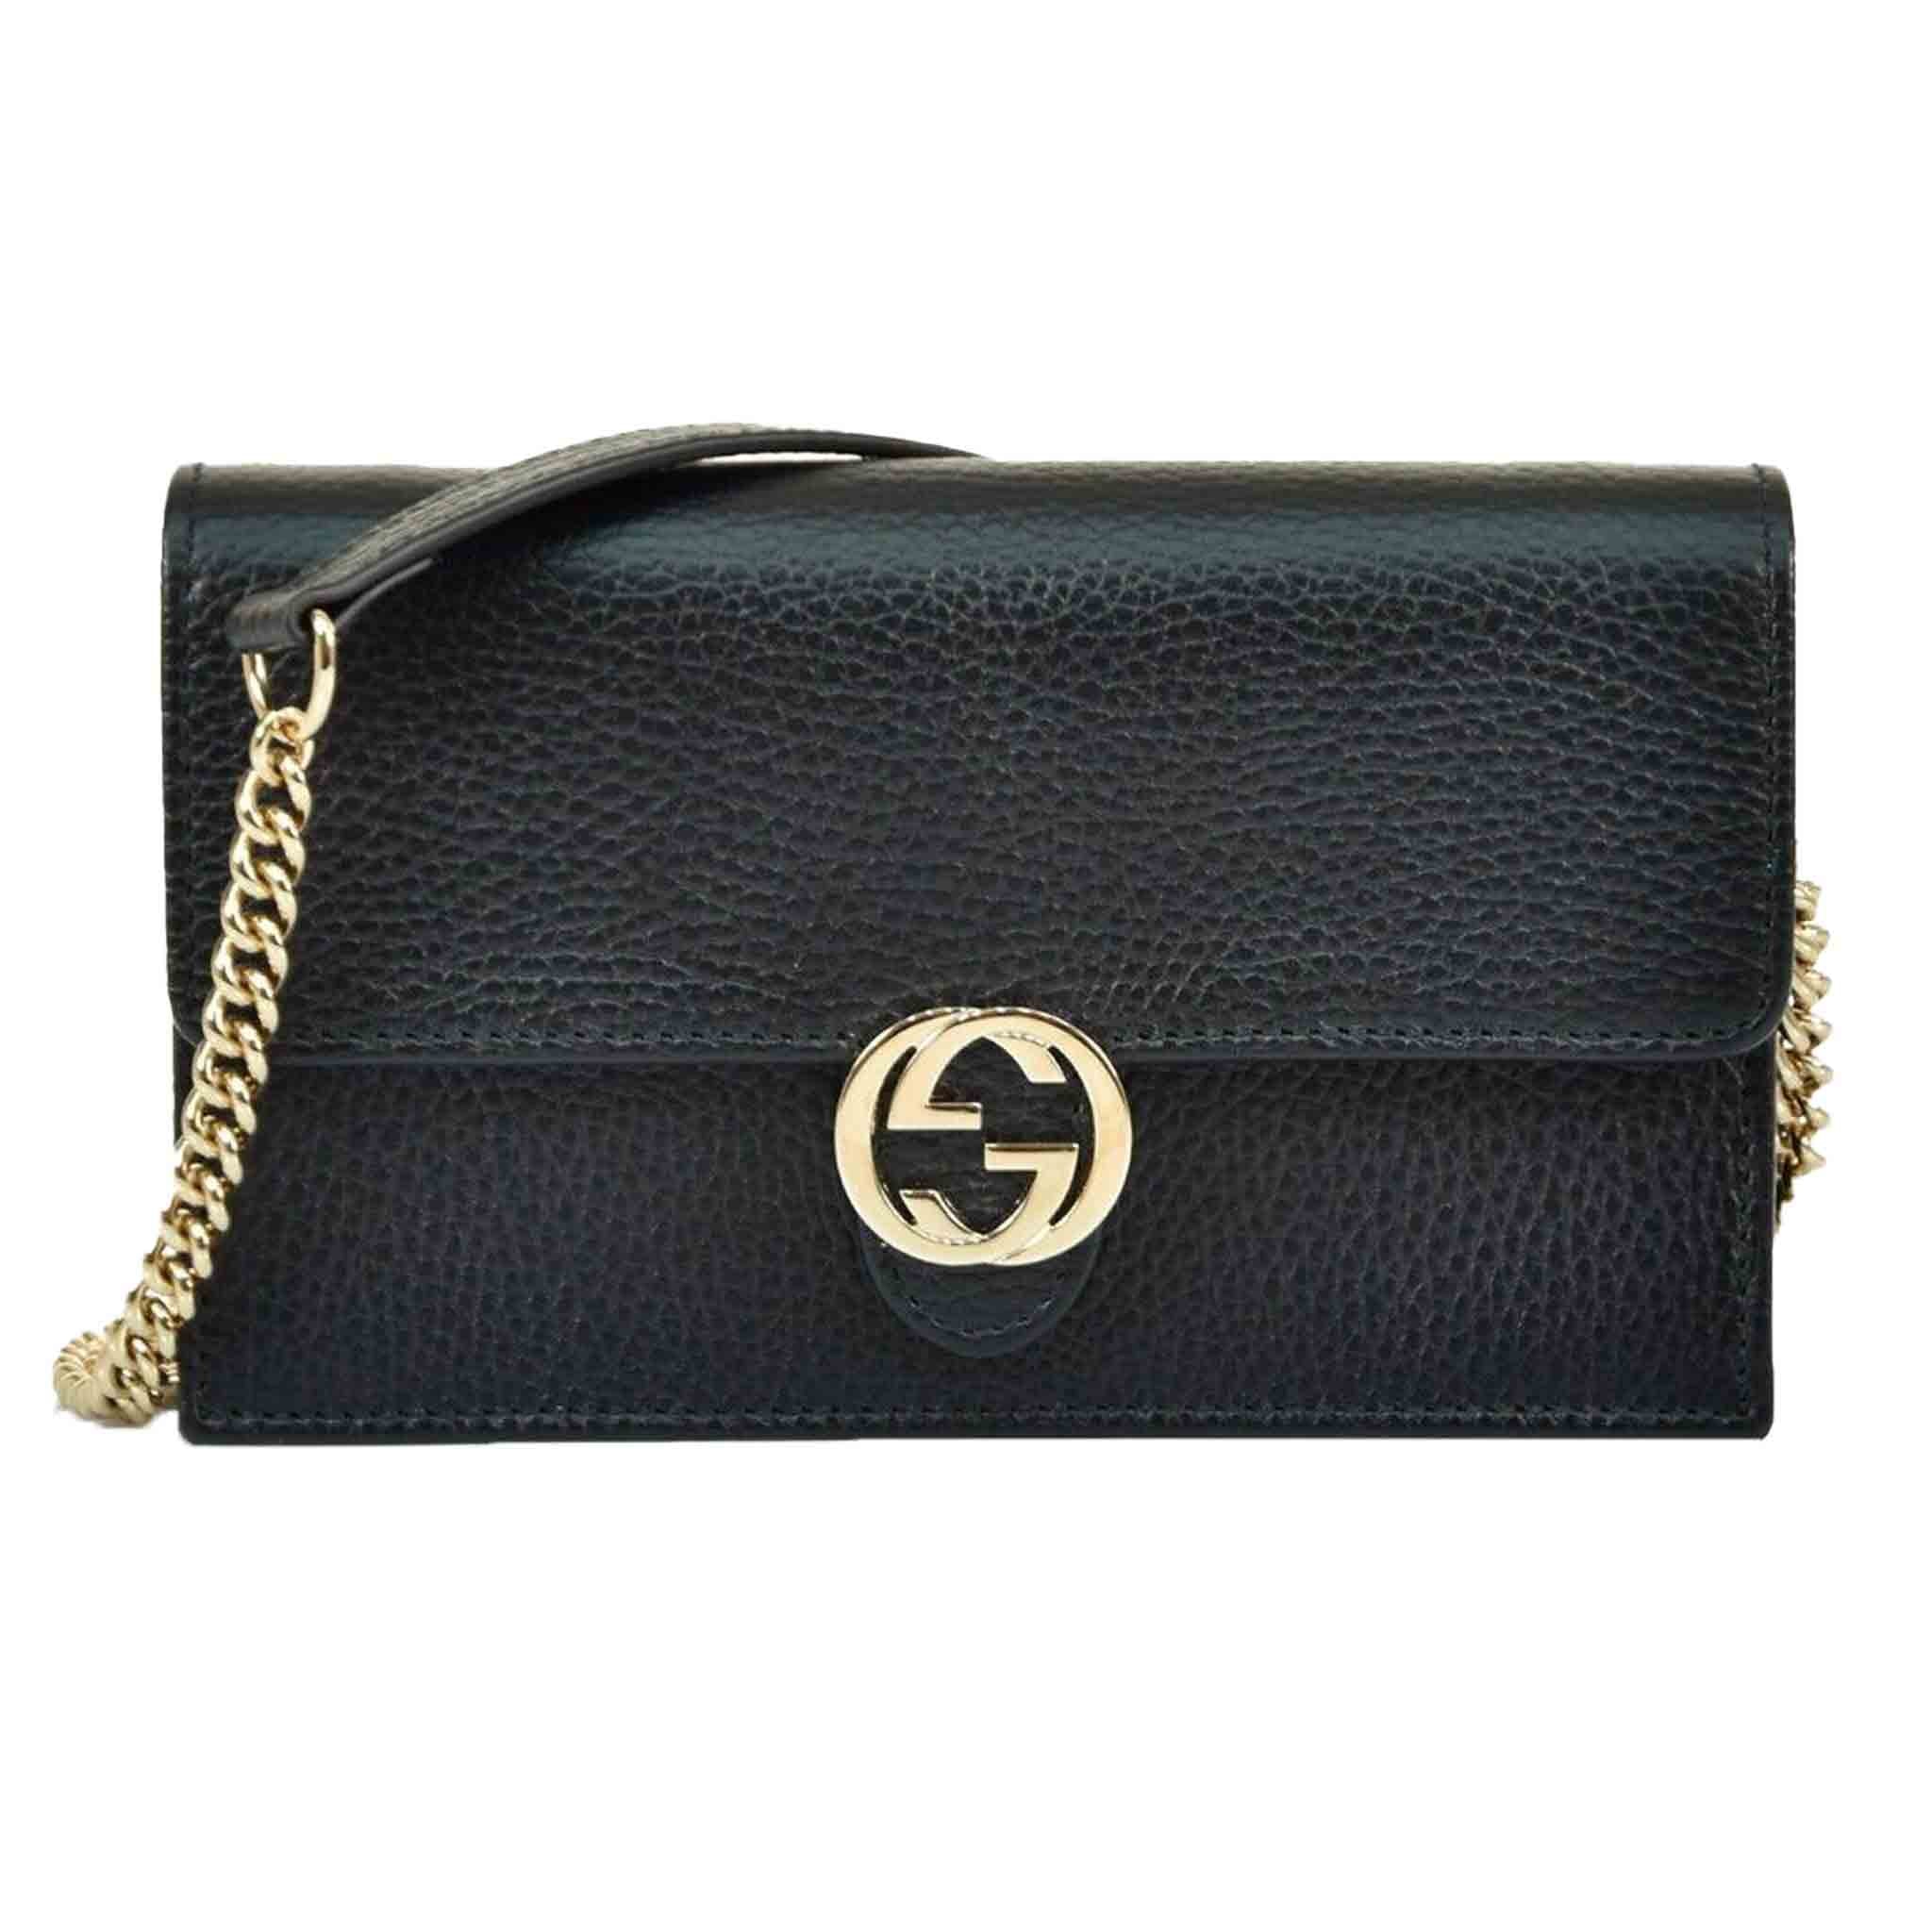 Gucci Logo Interlocking Calf Leather Small Bag in Black